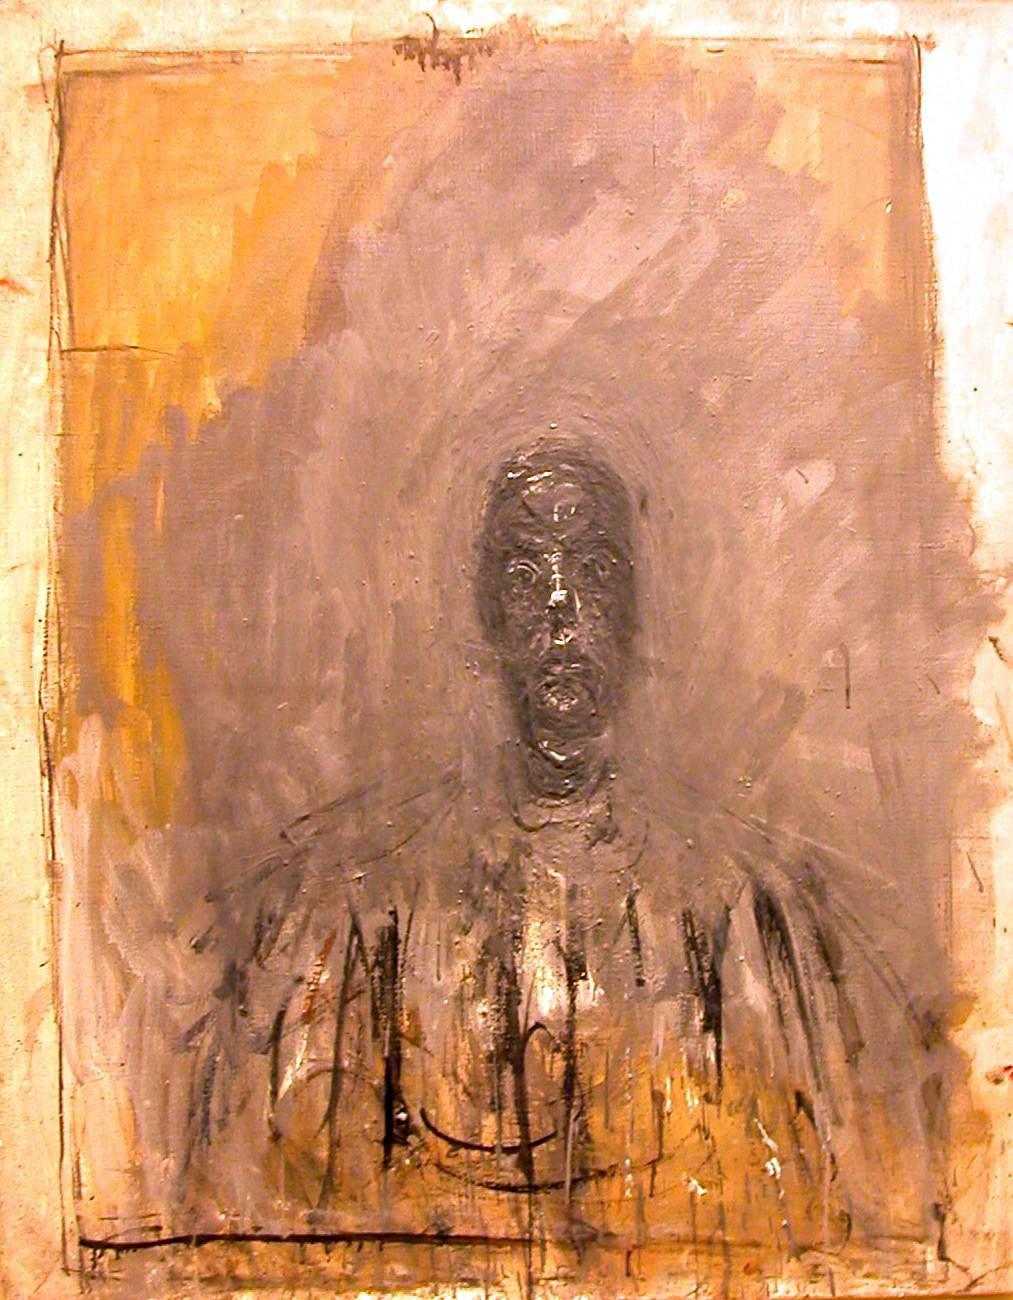 Alberto Giacometti, Tête noire, 1960